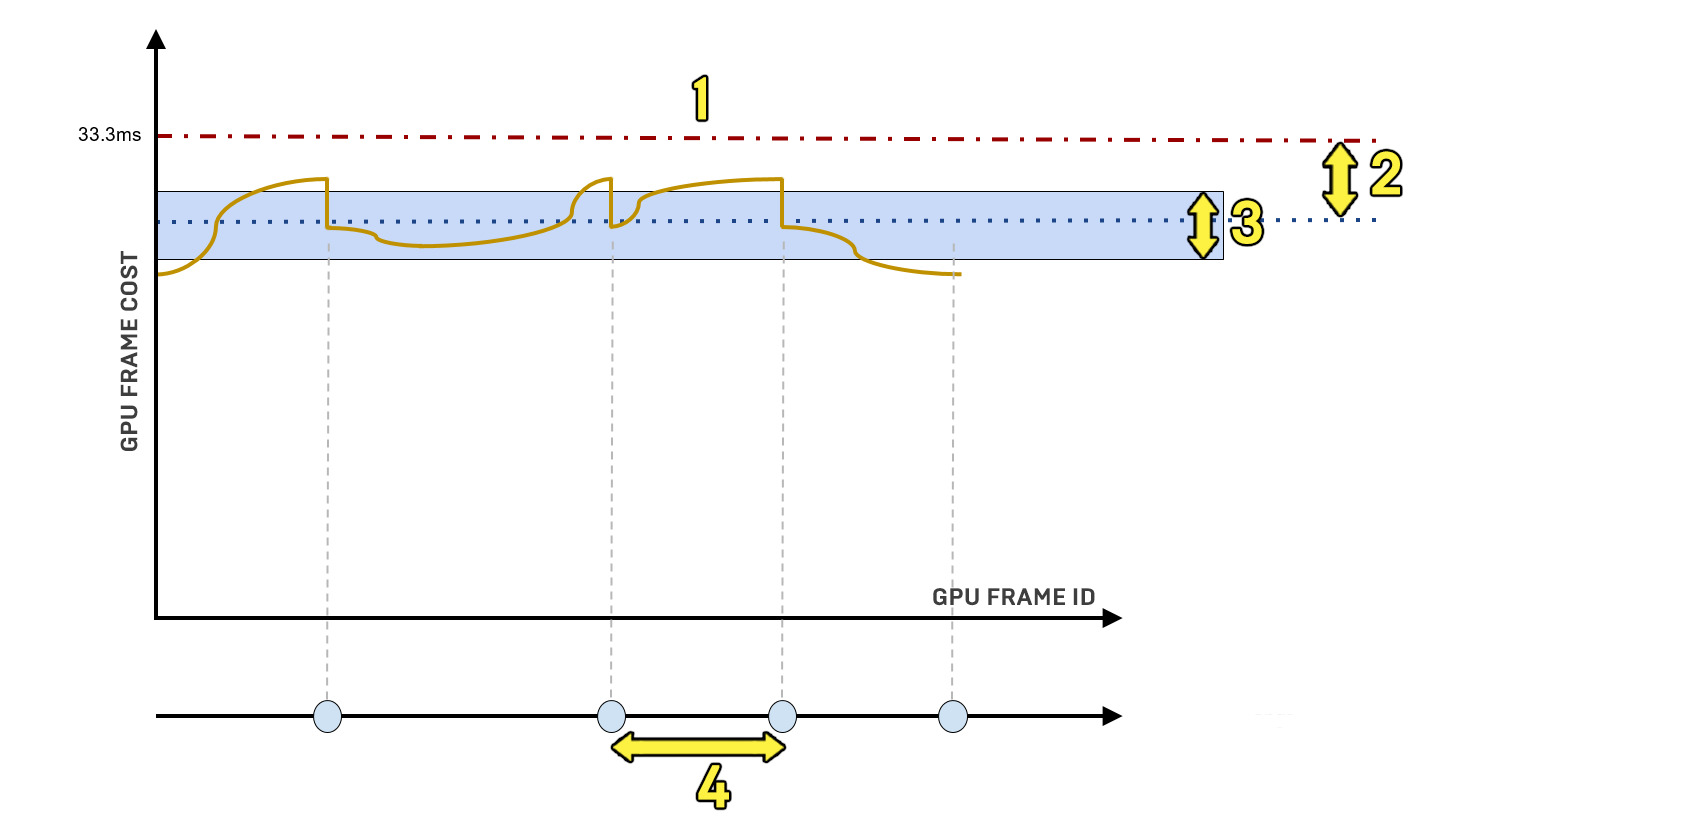 动态分辨率虚幻引擎4中使用的动态分辨率系统的概述。